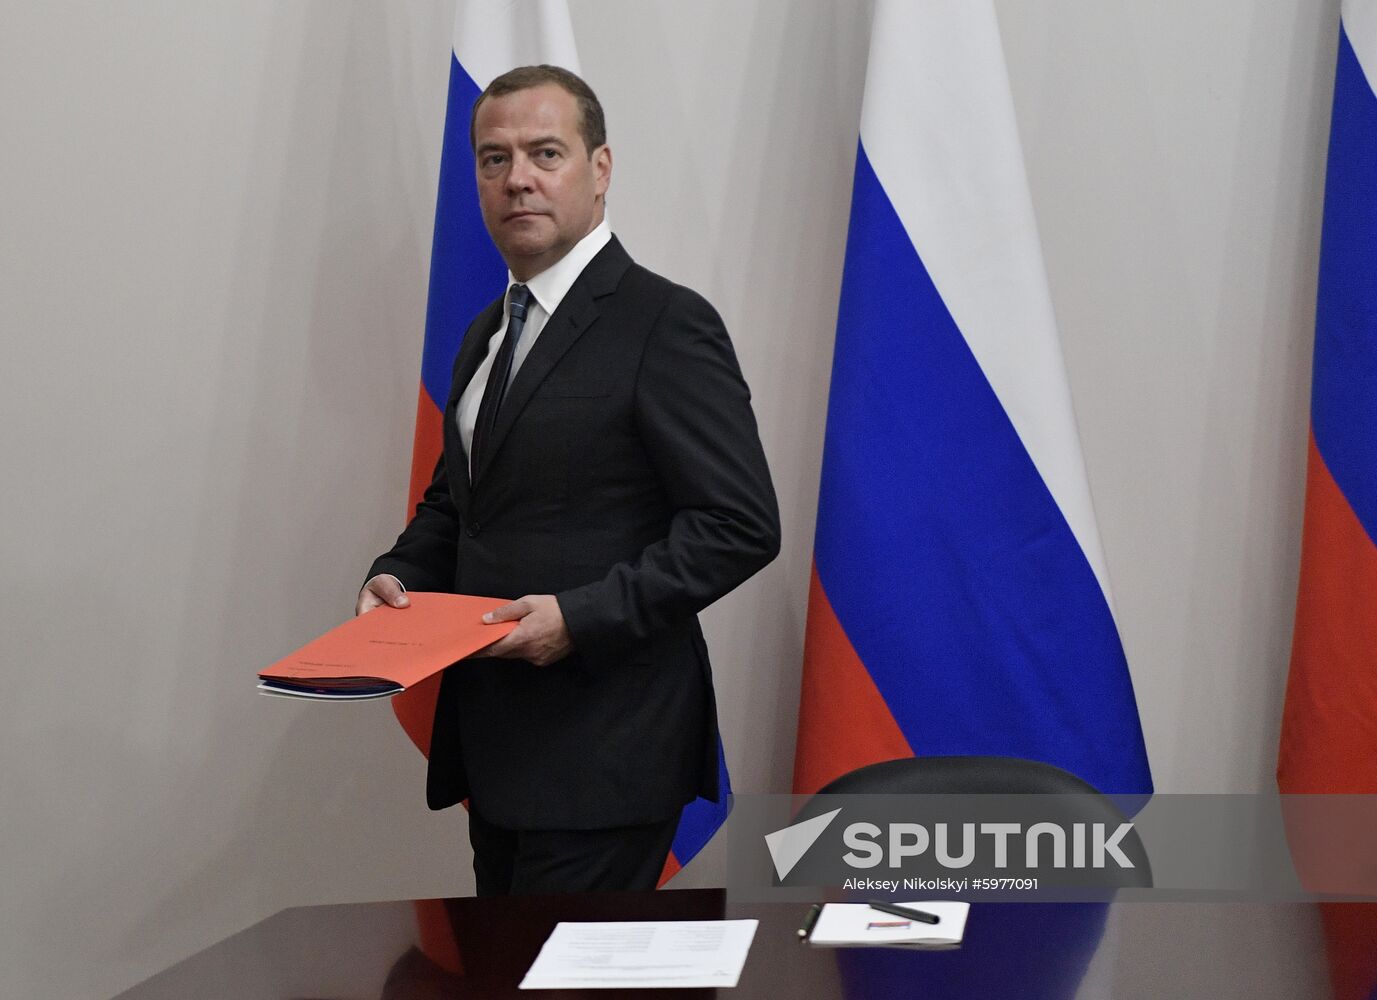 Russia Putin Medvedev